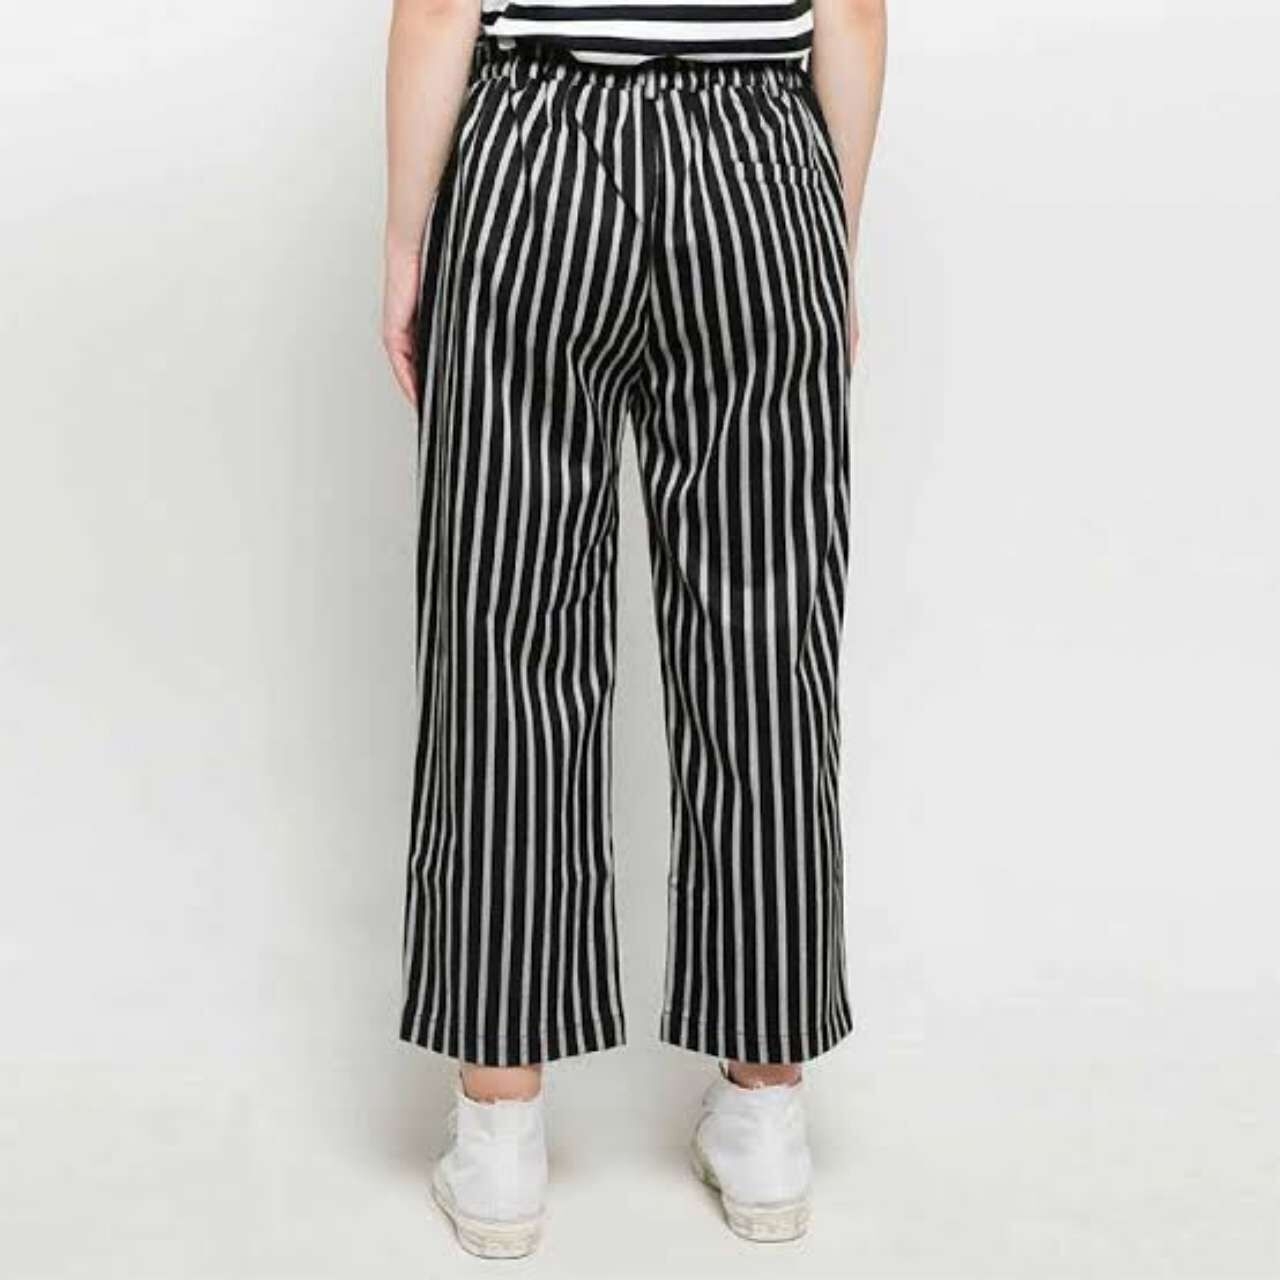 Argyle Oxford Black & White Stripes Long Pants